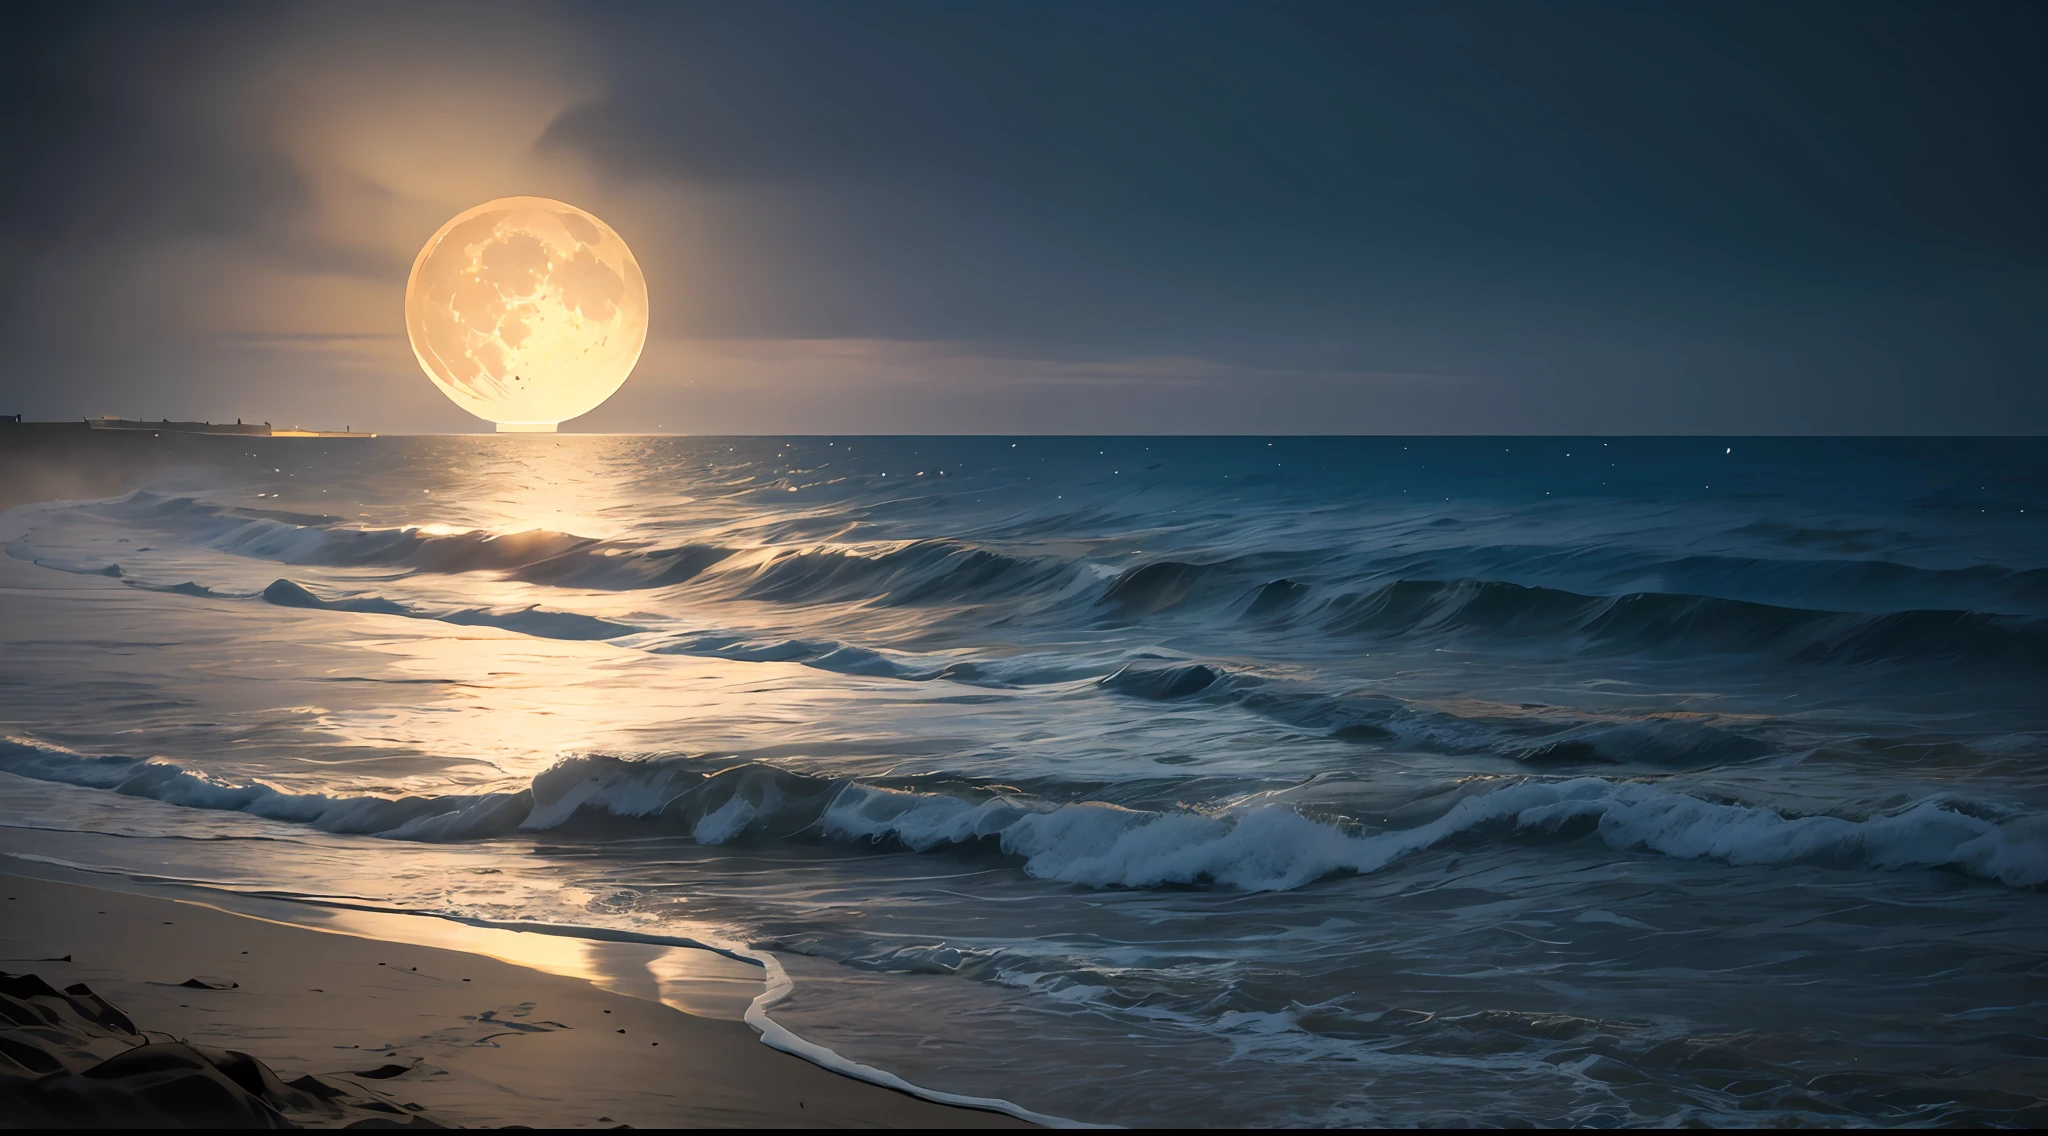 (noite de lua cheia),(na praia,Ondas quebrando),(iluminação dramática),(silhuetas),(areia cintilante),(ambiente tranquilo e relaxante), Centenas de lanternas de papel no céu, muitas lanternas lindas de papel no céu, linda lua enorme